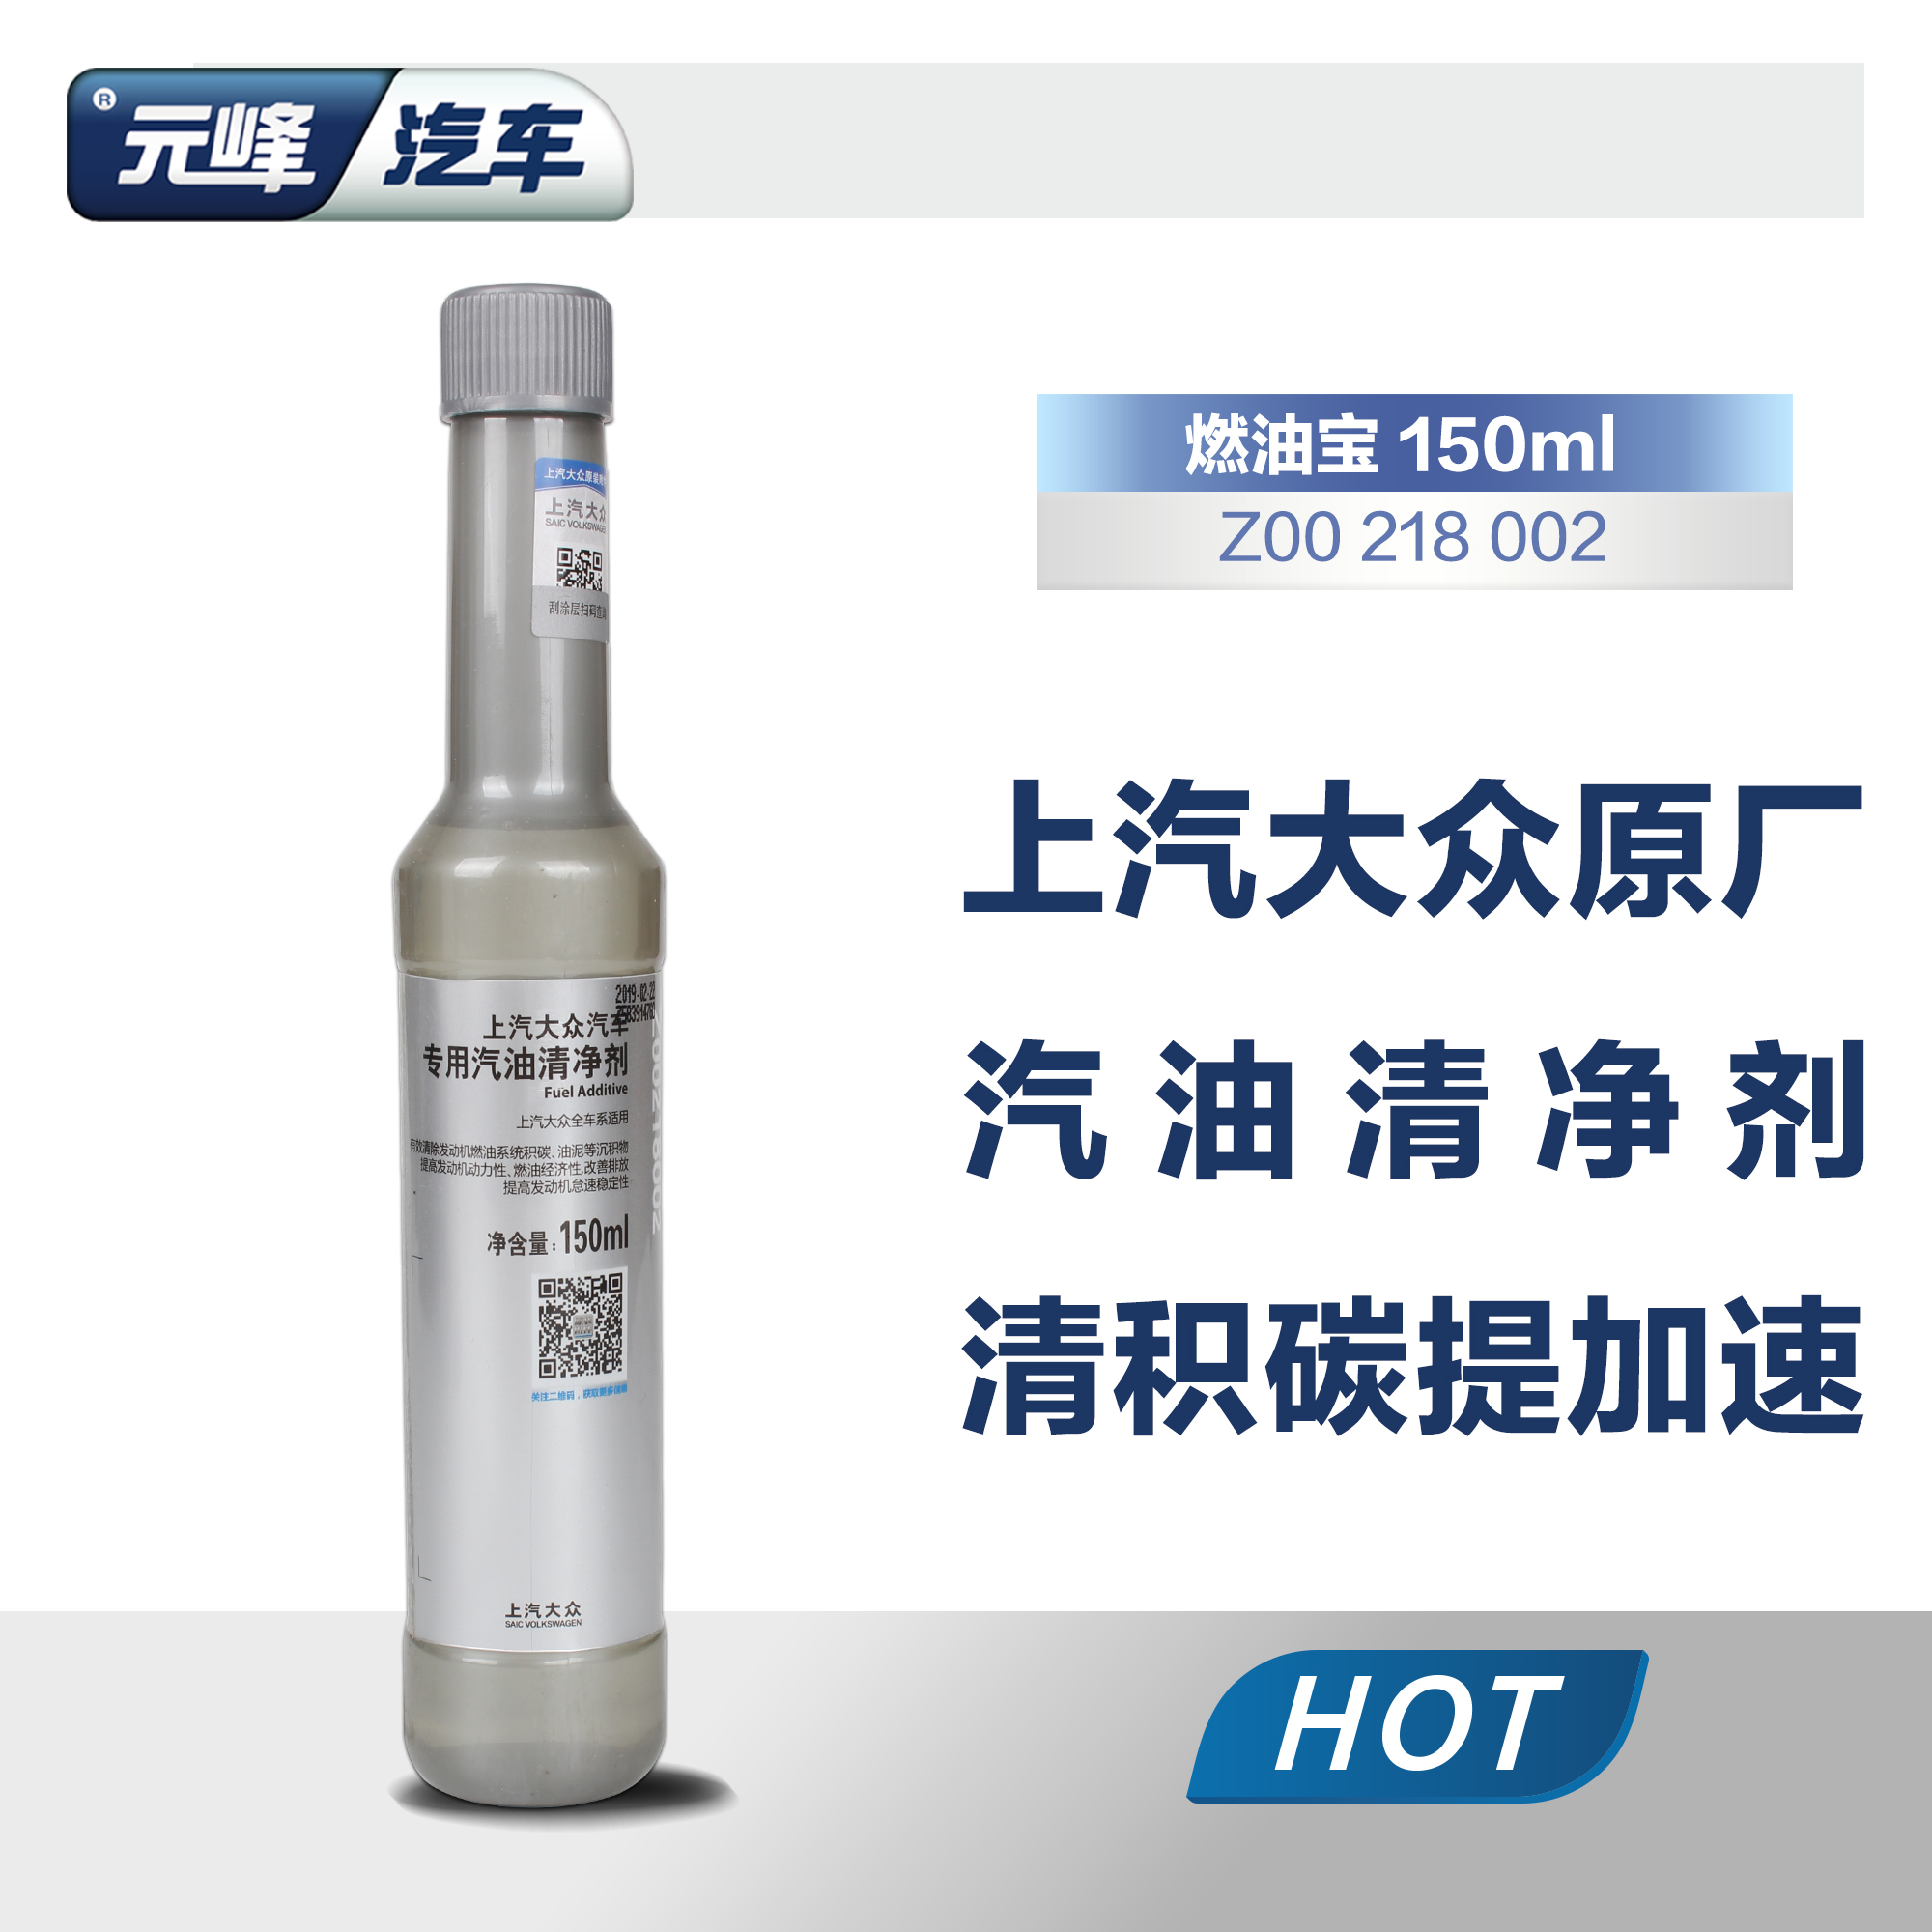 上海大众专用添加剂 G17乙醇汽油添加剂发动机除积碳清洁剂燃油宝